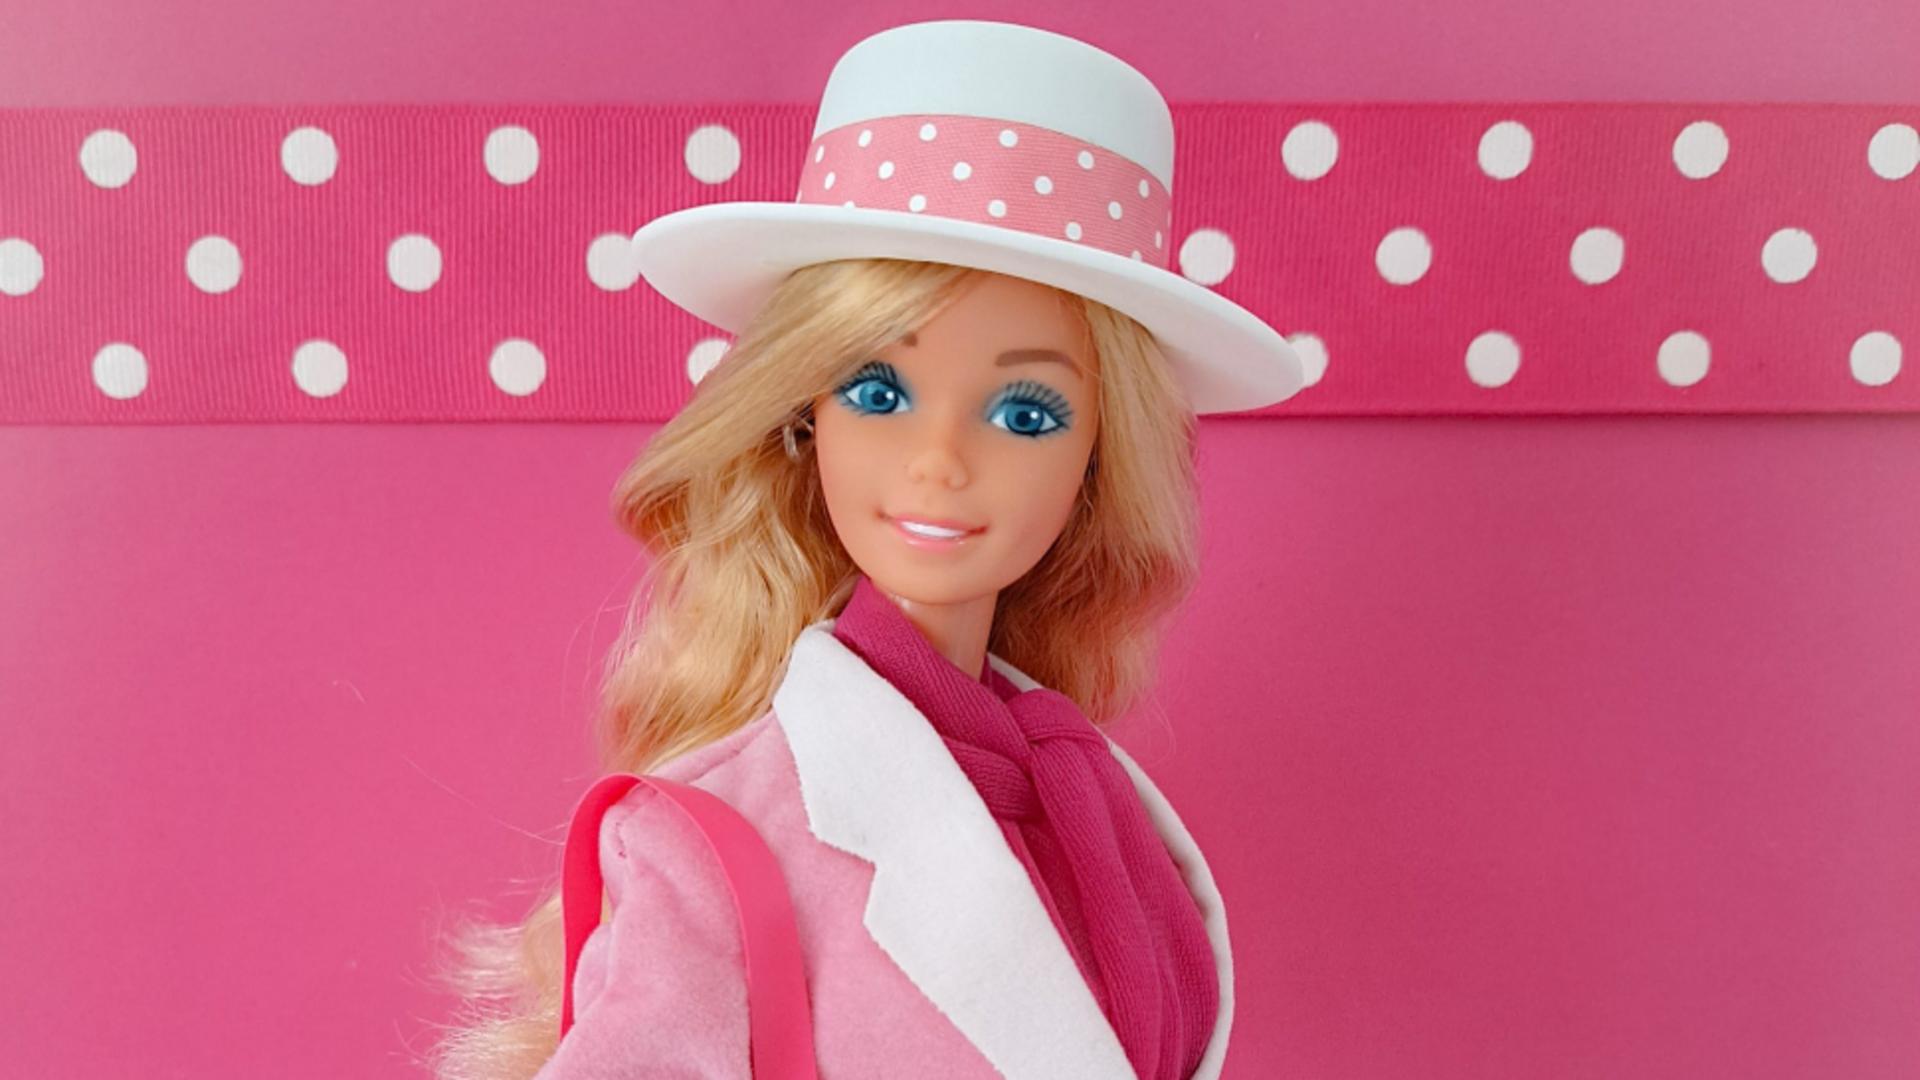 Păpușa Barbie, pusă la zid de comuniști. Se temeau că “șoimii patriei” nu vor mai crede în Ceaușescu